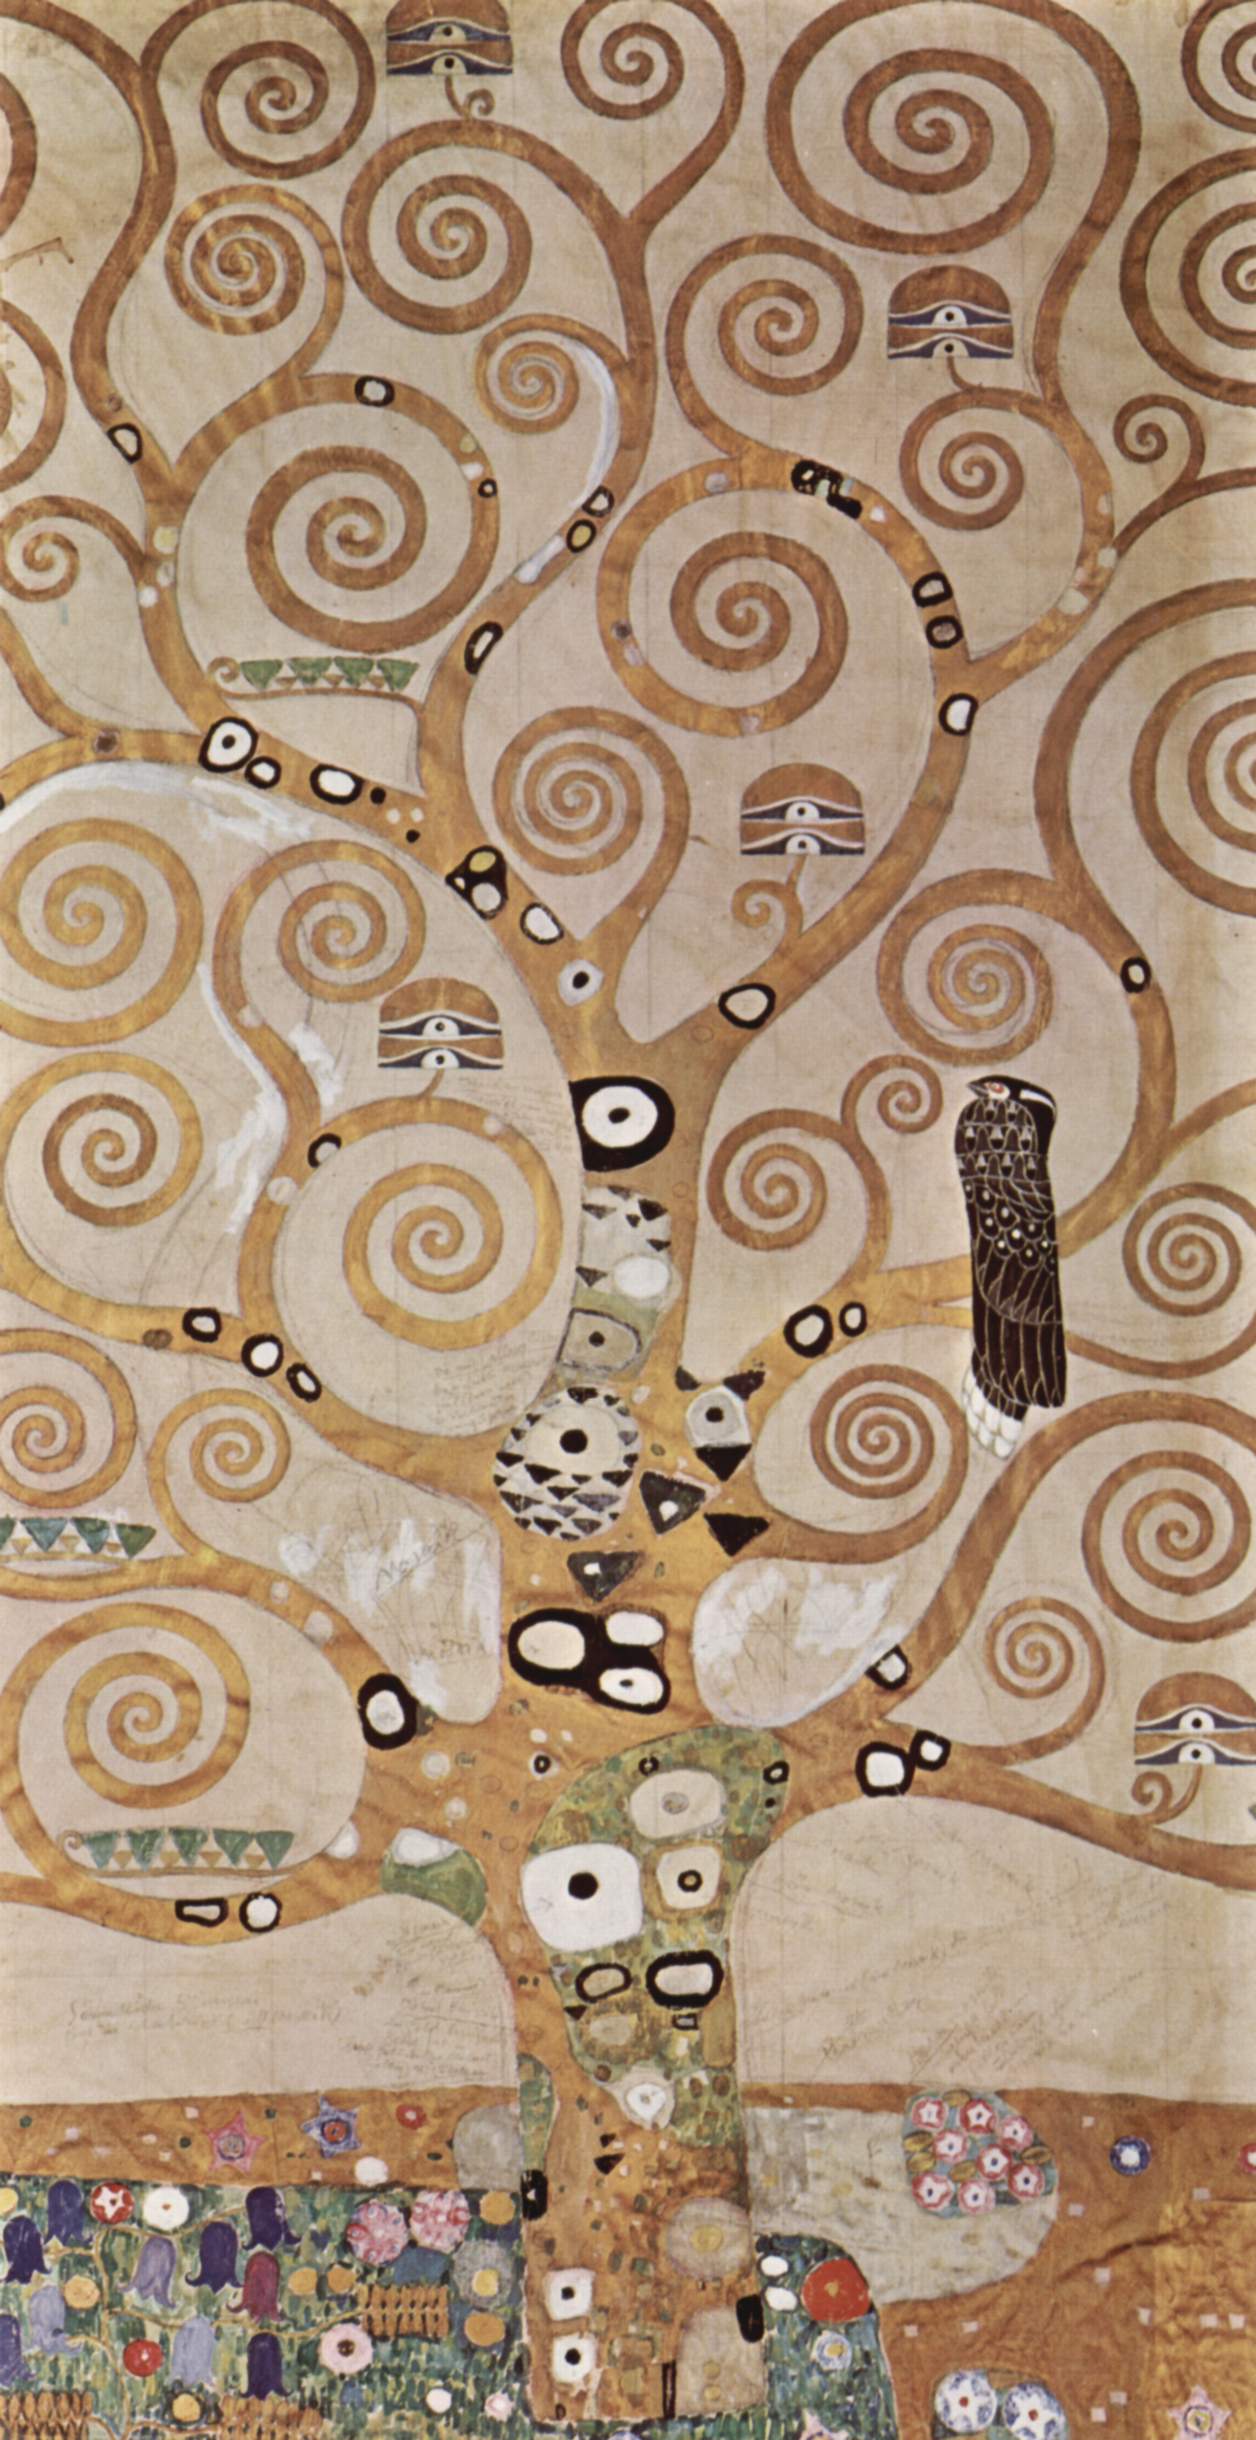 images/Gustav_Klimt.jpg